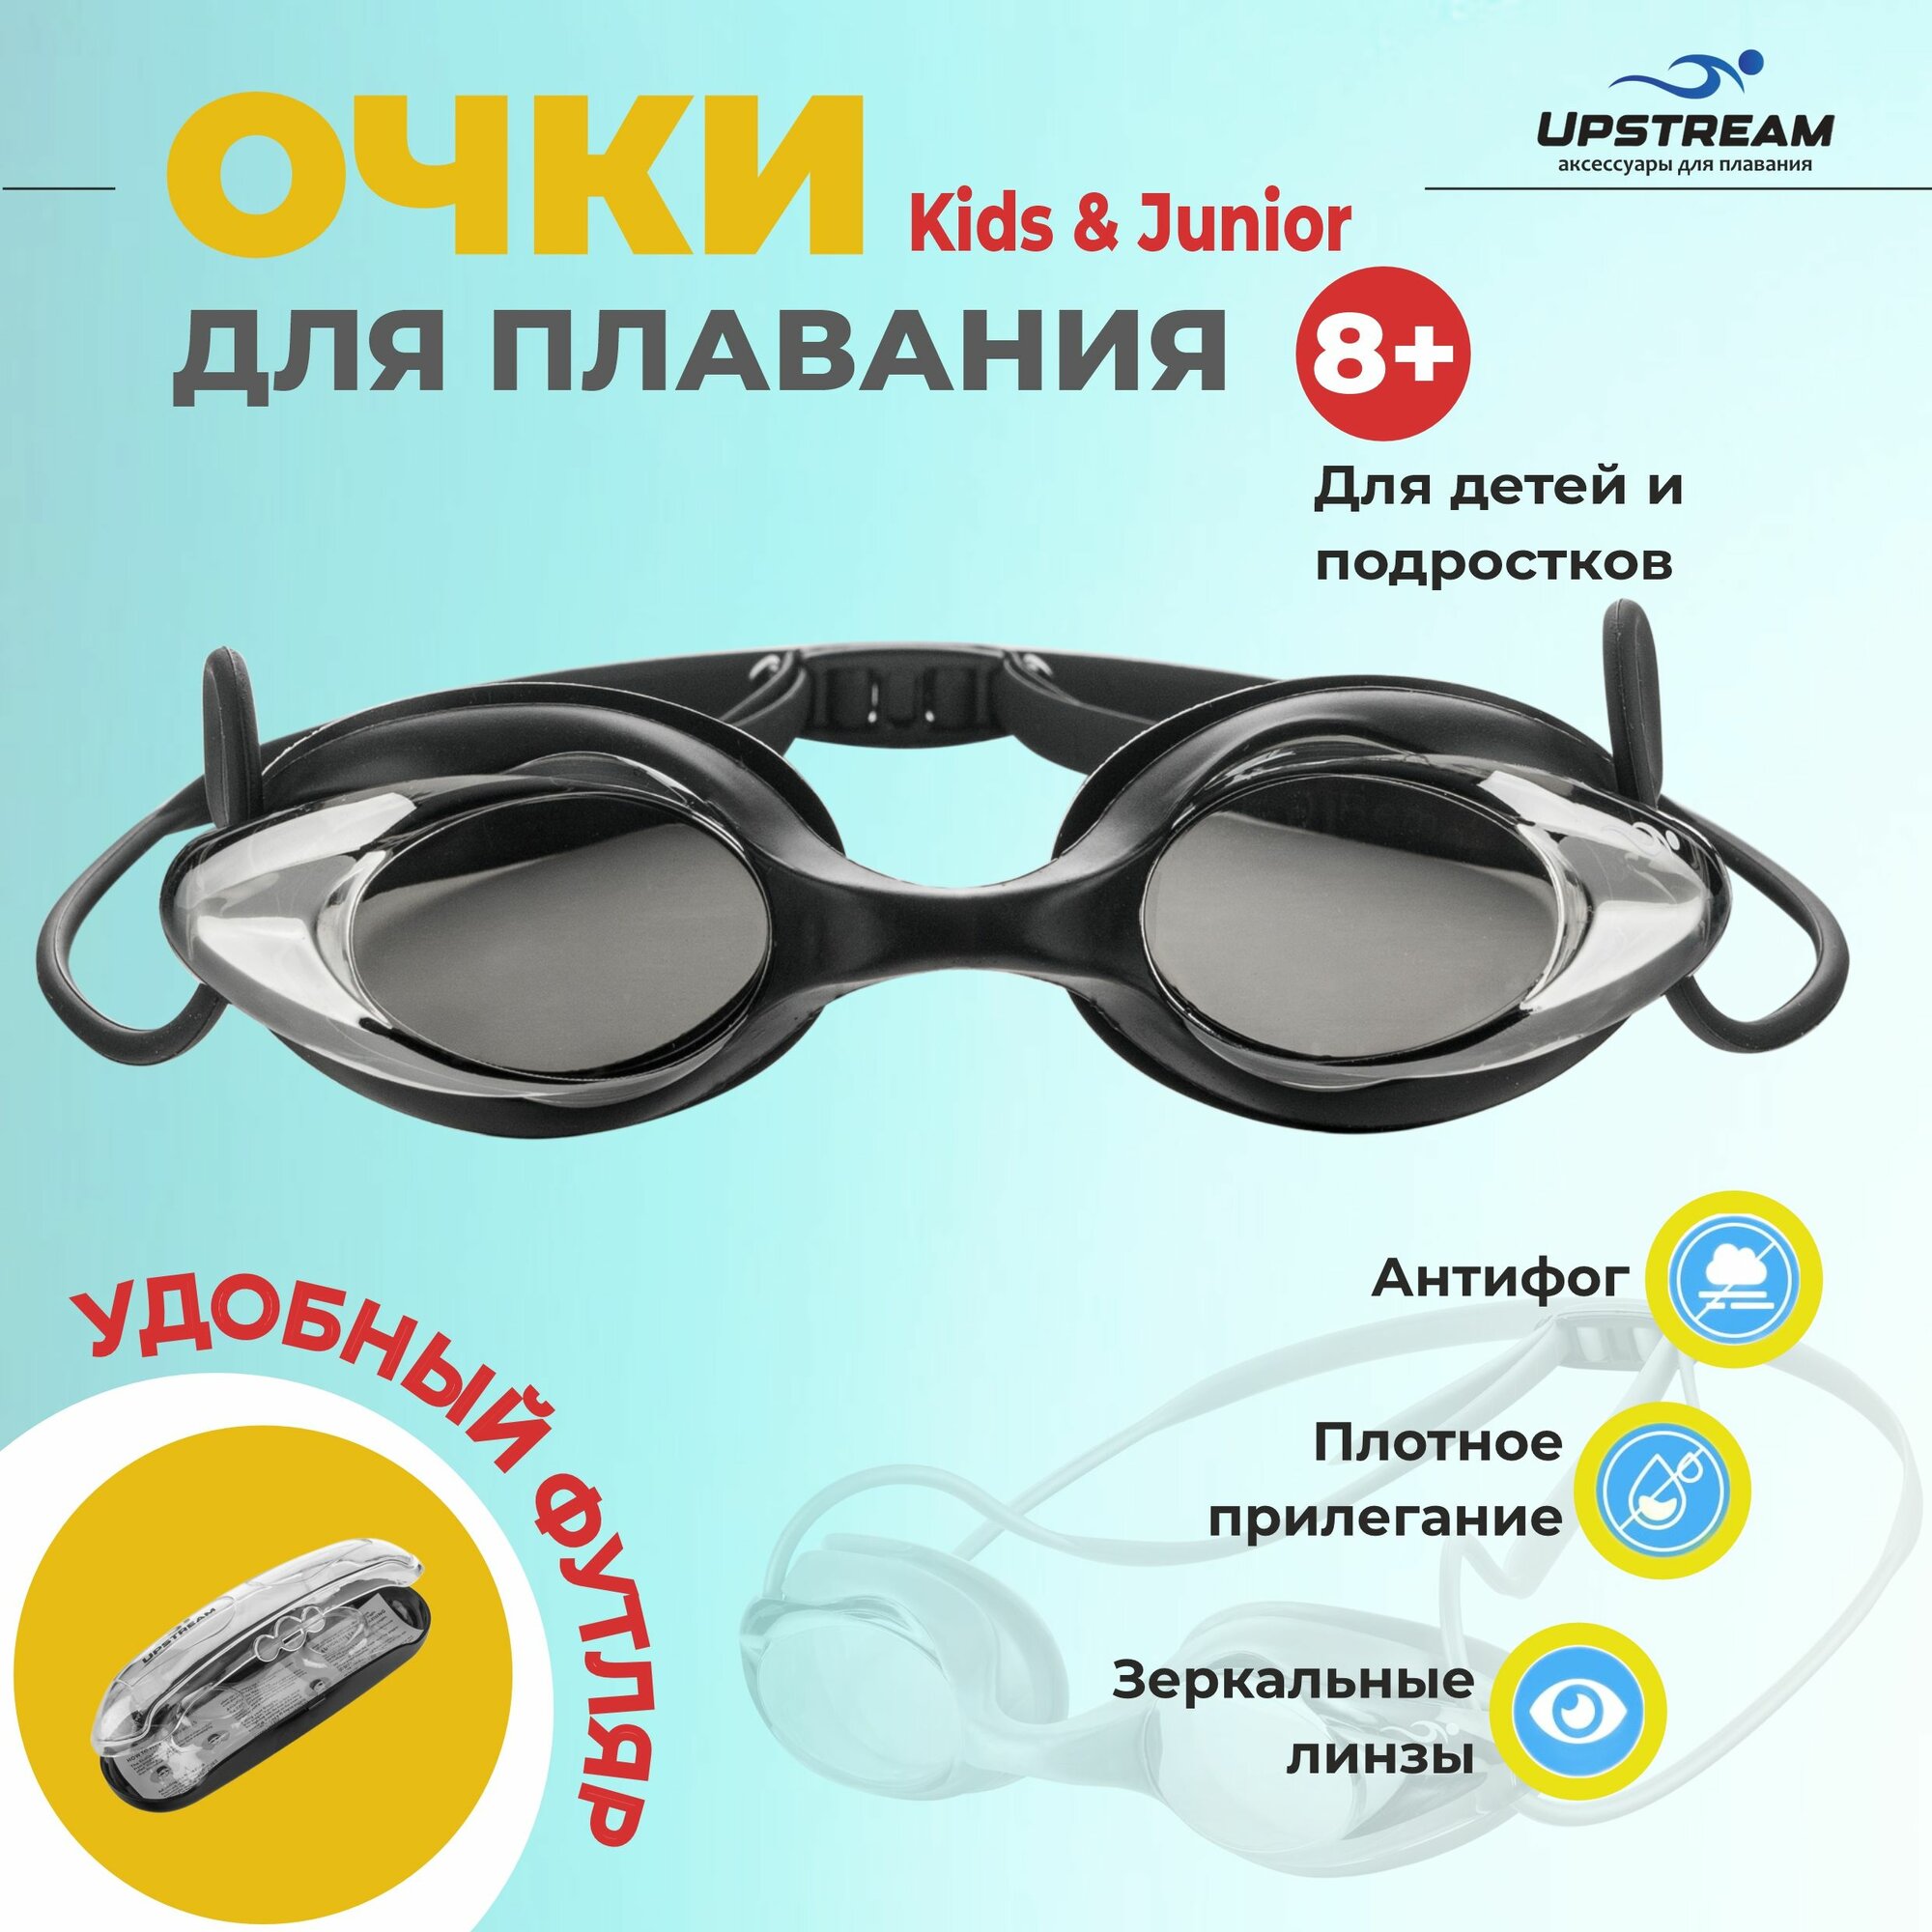 Очки для плавания детские, подростковые UPSTREAM START Kids&Junior, для бассейна и на море